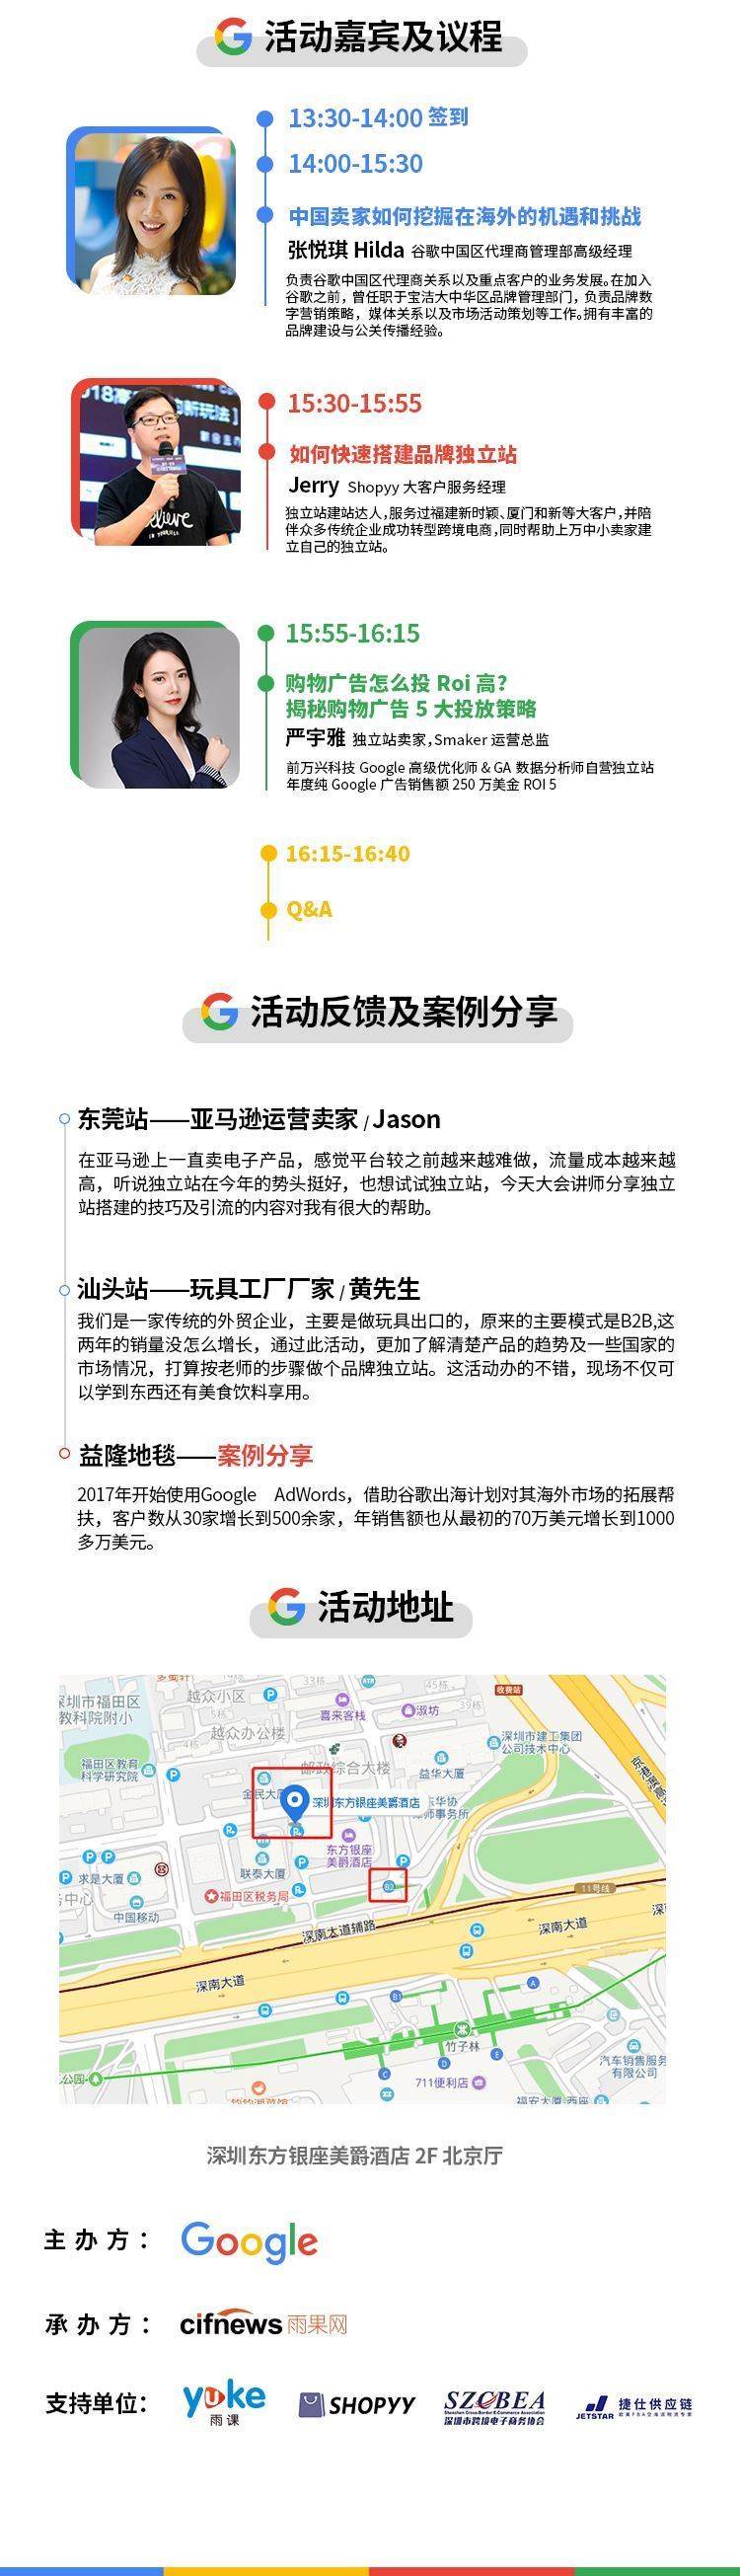 谷歌长图-深圳_02修改.jpg